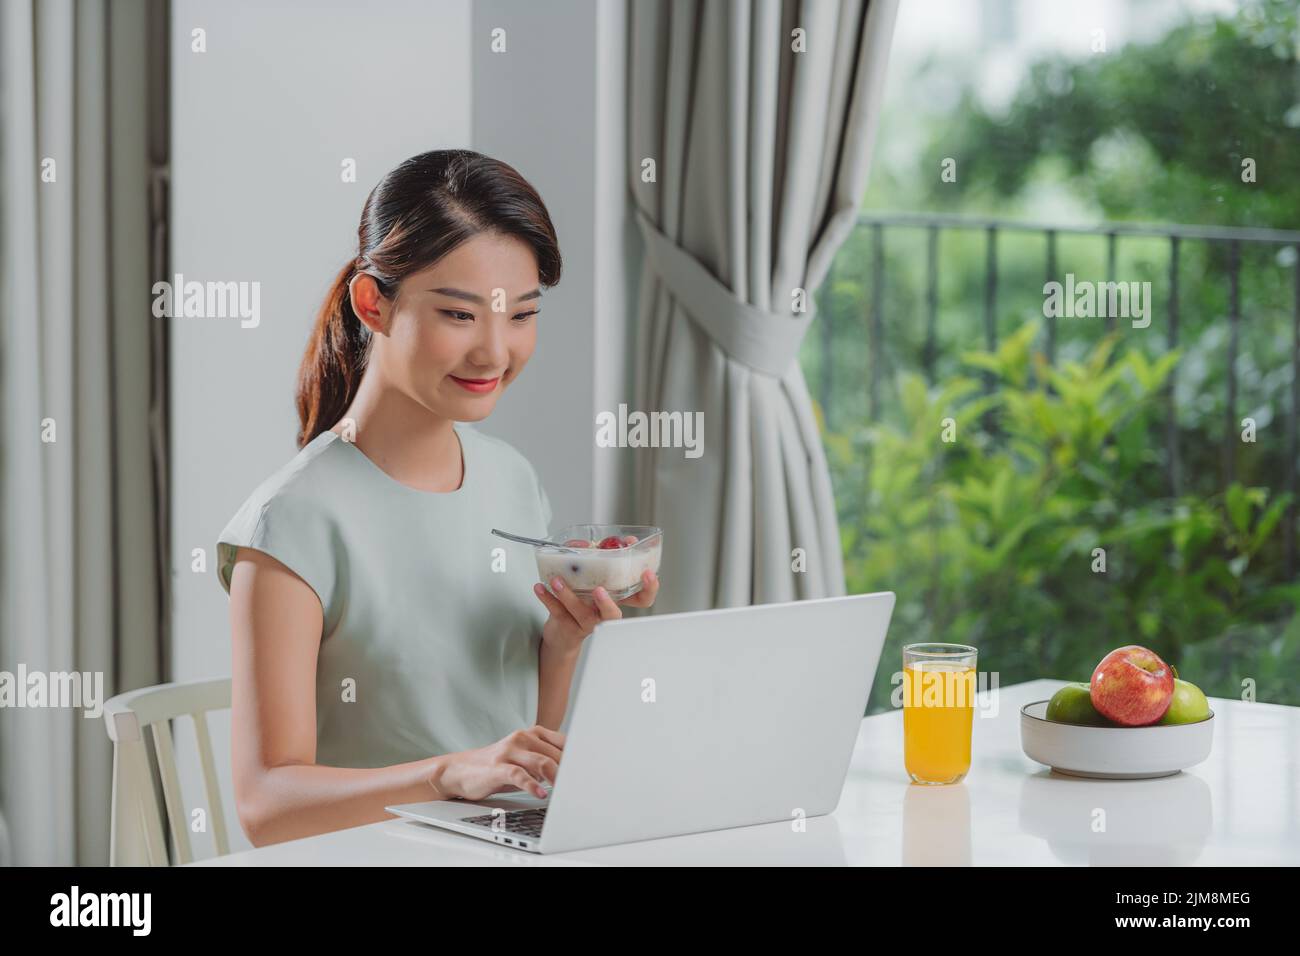 Retrato de una hermosa joven que trabaja con el ordenador portátil mientras come en casa. Foto de stock